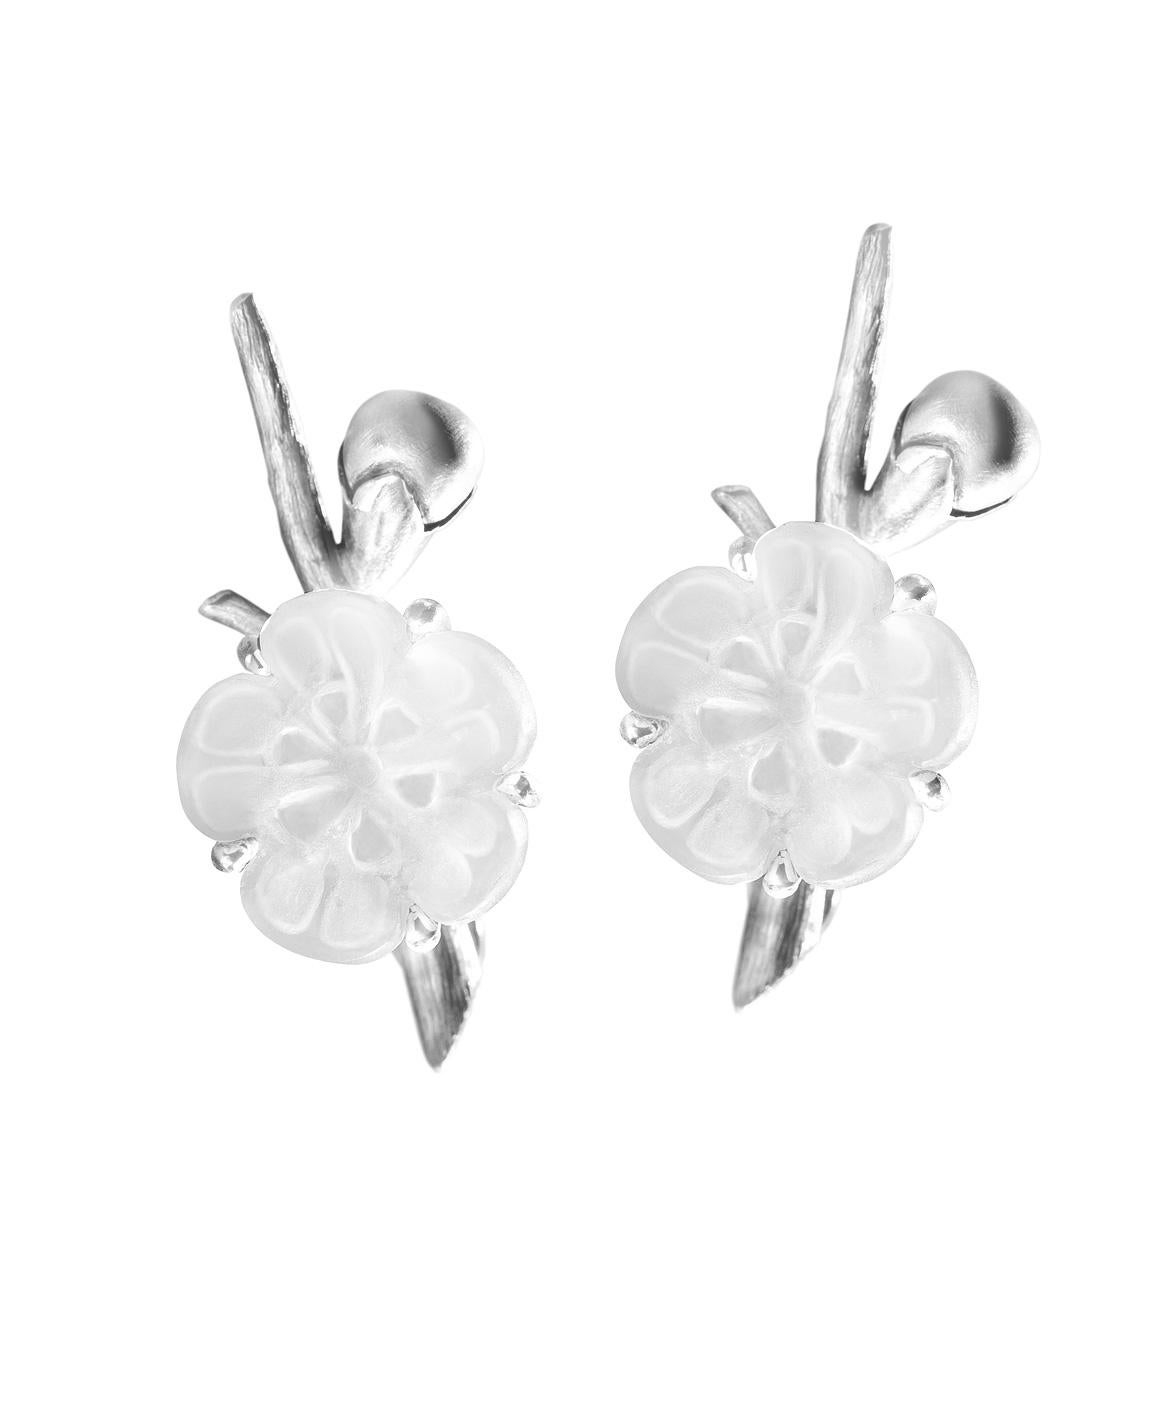 Diese modernen Ohrringe aus Sterlingsilber sind Teil der Sakura-Kollektion, die in der Zeitschrift Vogue UA vorgestellt wurde.

Das Design dieser Ohrringe ist modern und verleiht mit den mattierten Blüten der Kirschblüte einen romantischen Touch.